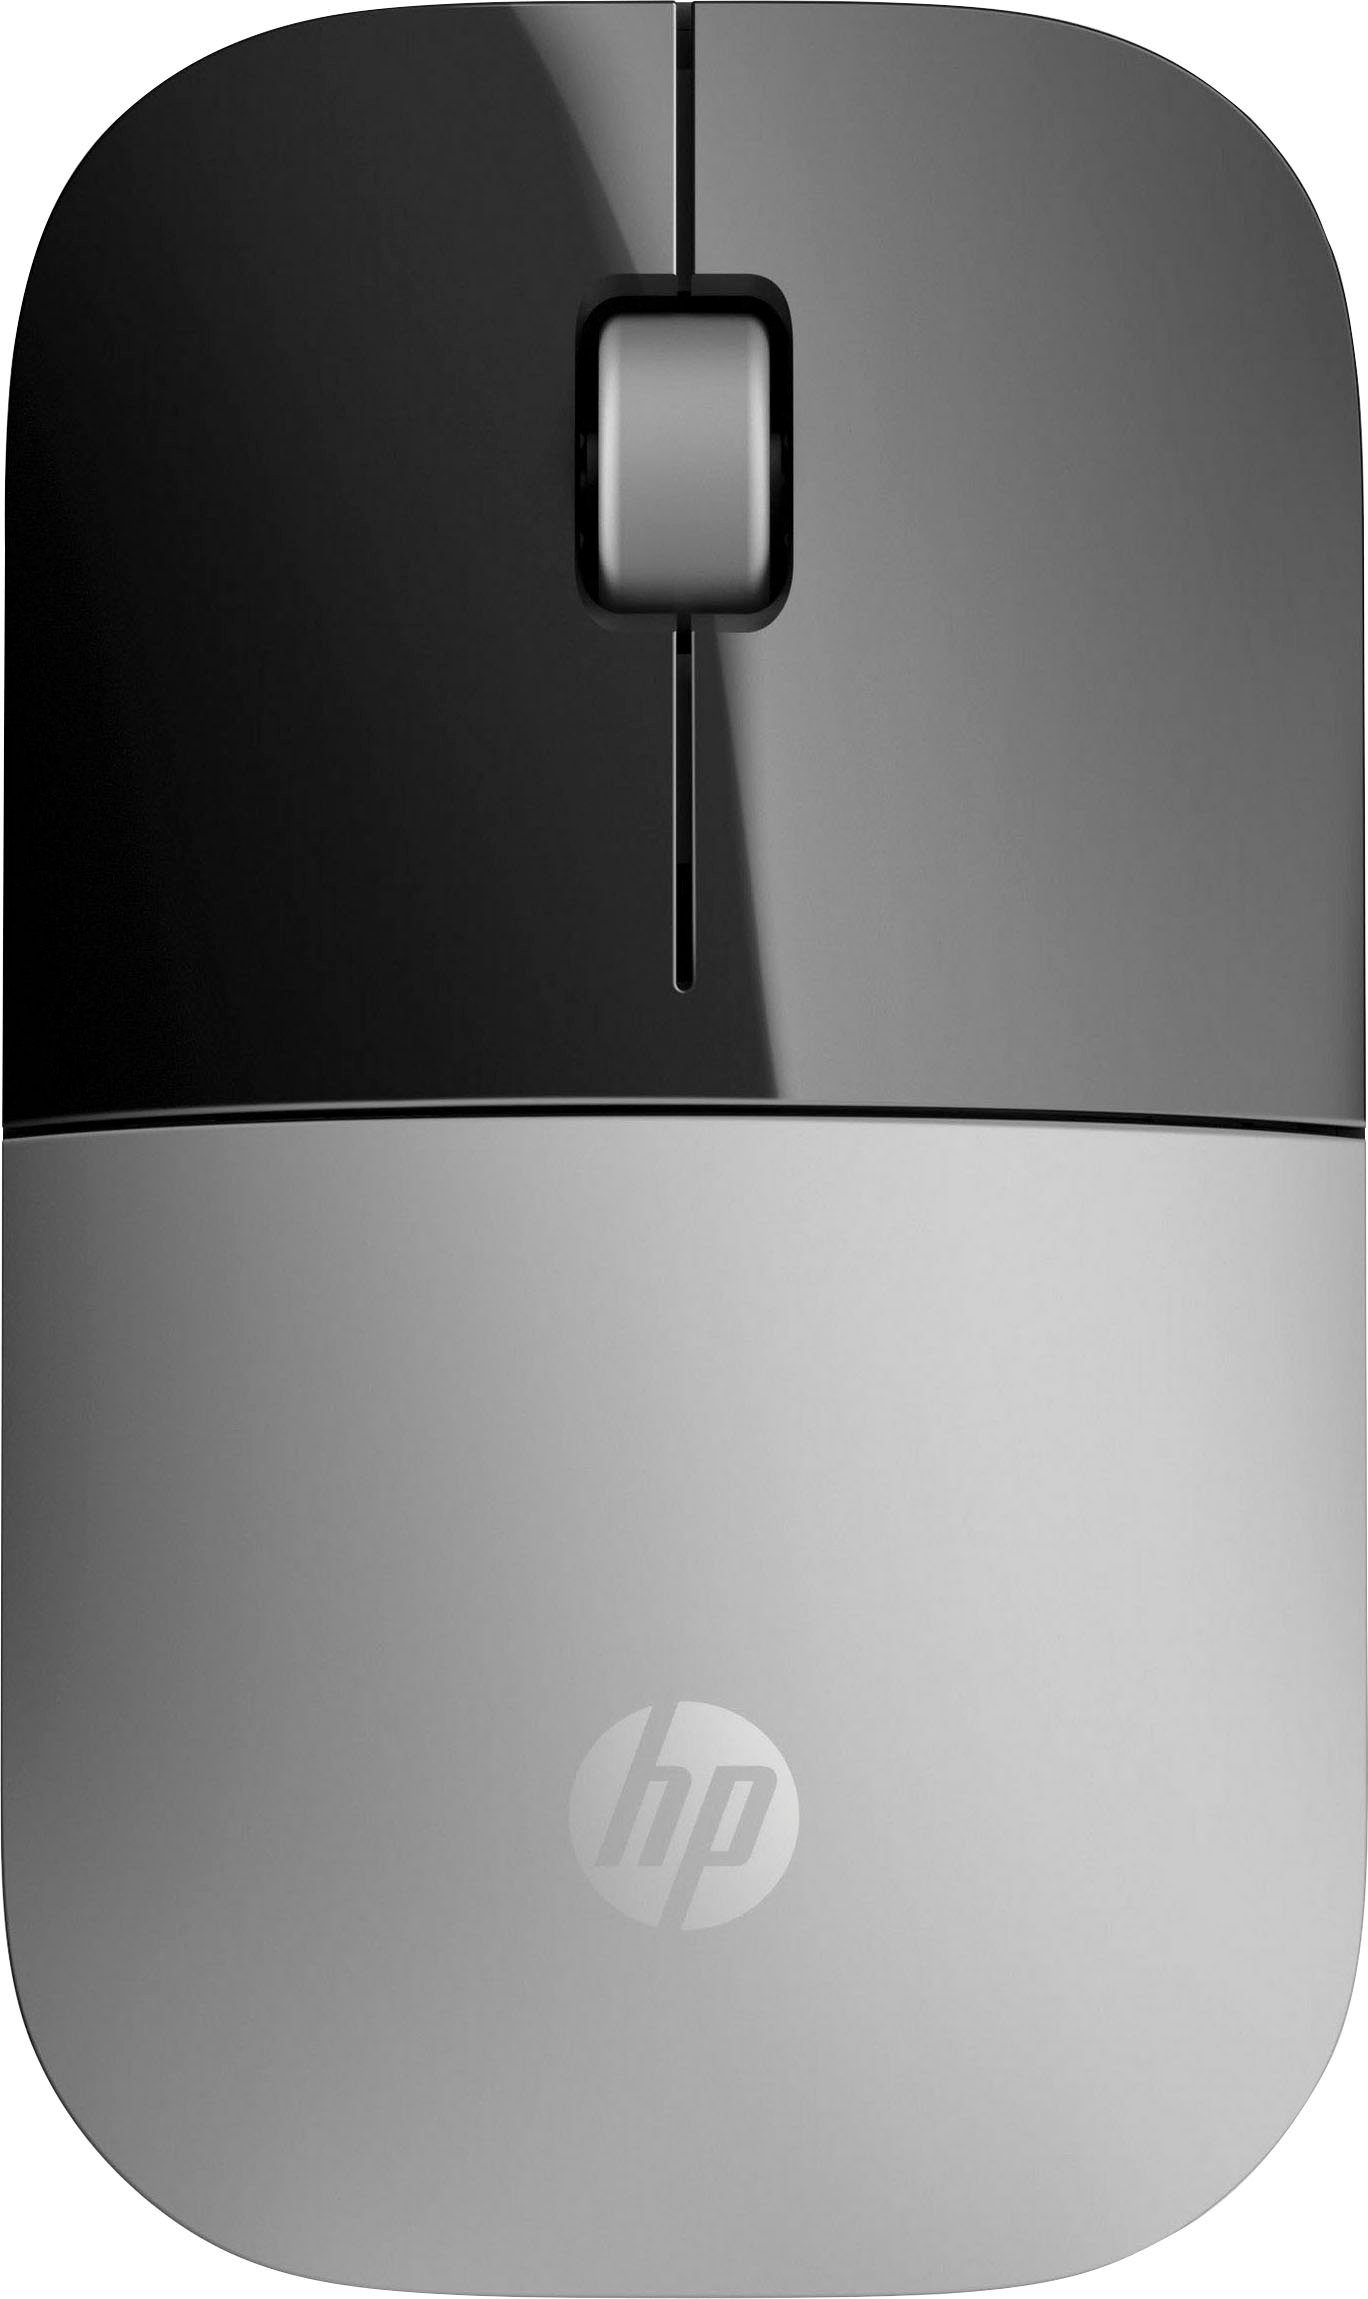 Maus HP Z3700 schwarz/silberfarben